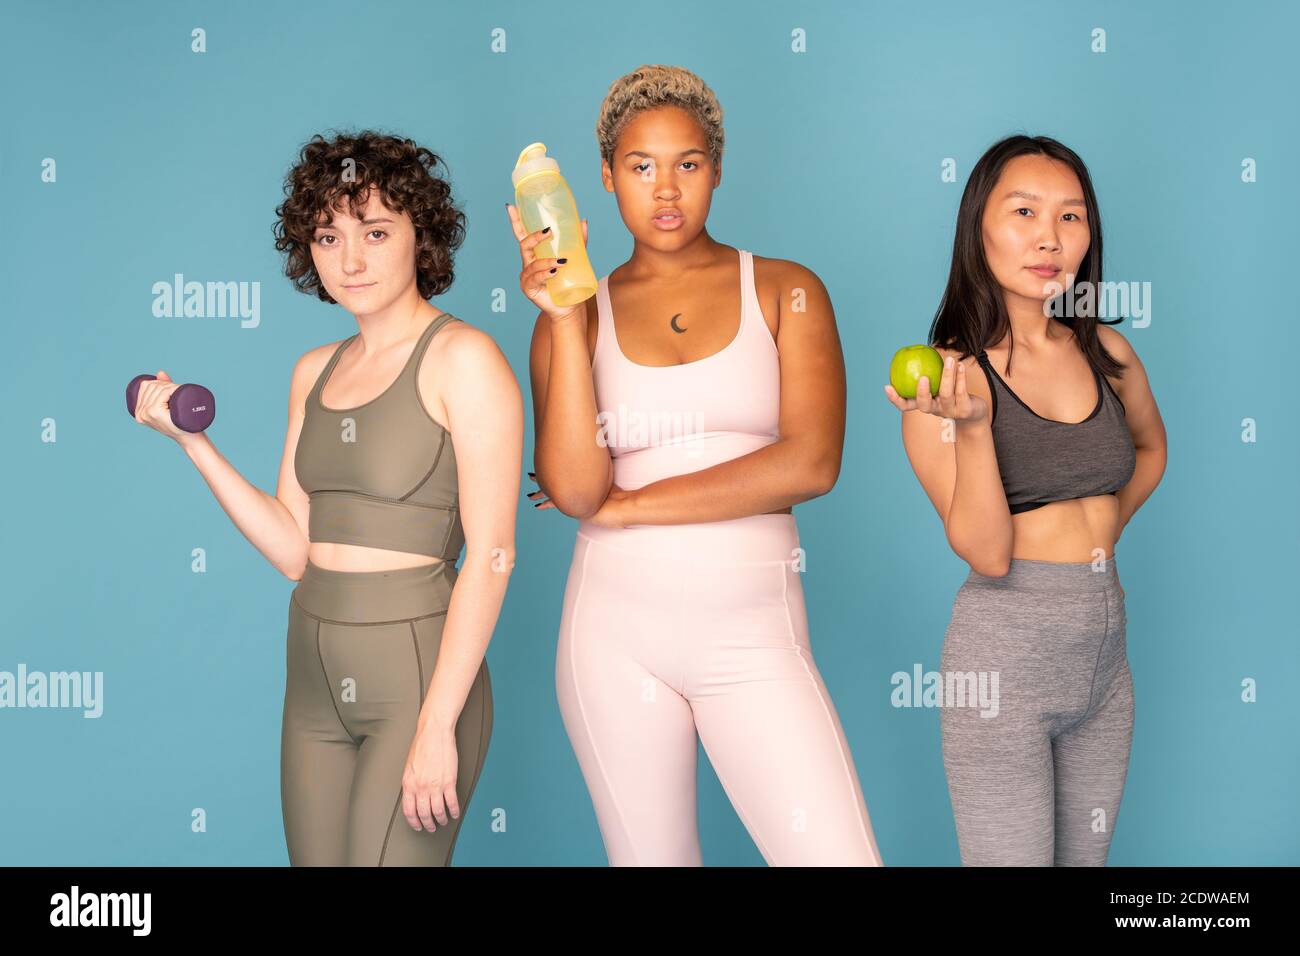 Drei junge, ziemlich aktive Frauen verschiedener Ethnien in Trainingsanzügen Stockfoto